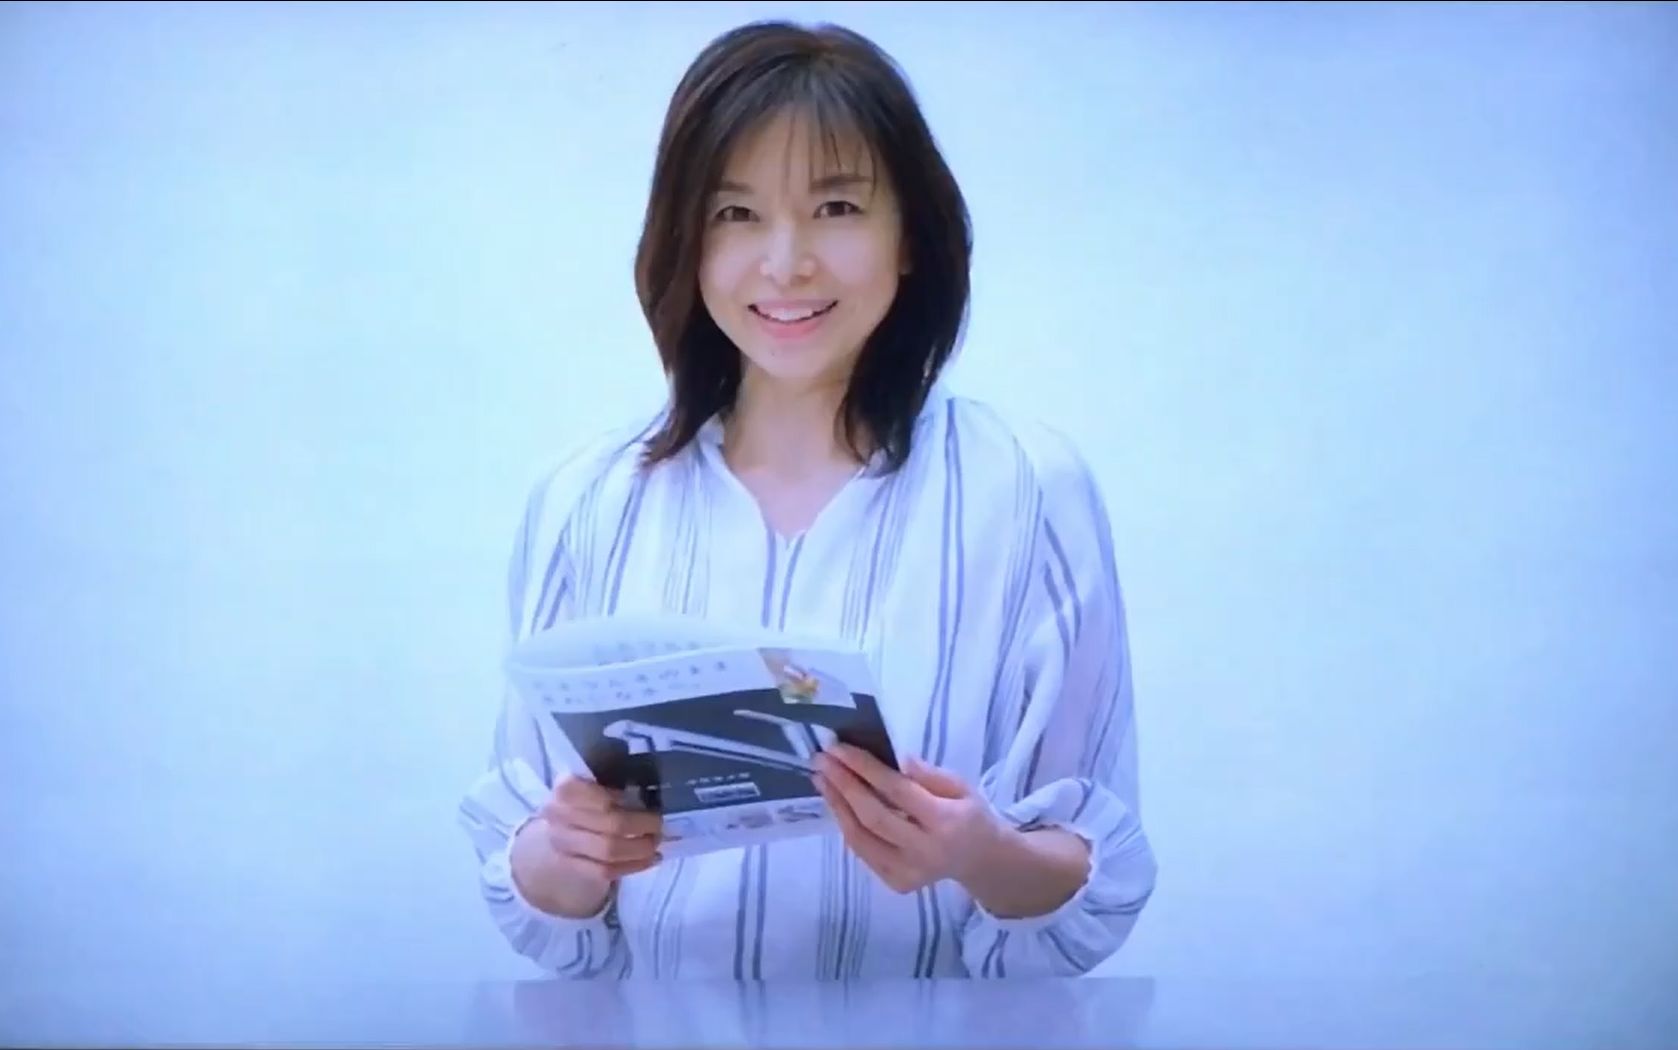 【日本广告】 山口智子 takagi 水龙头一体型净水器